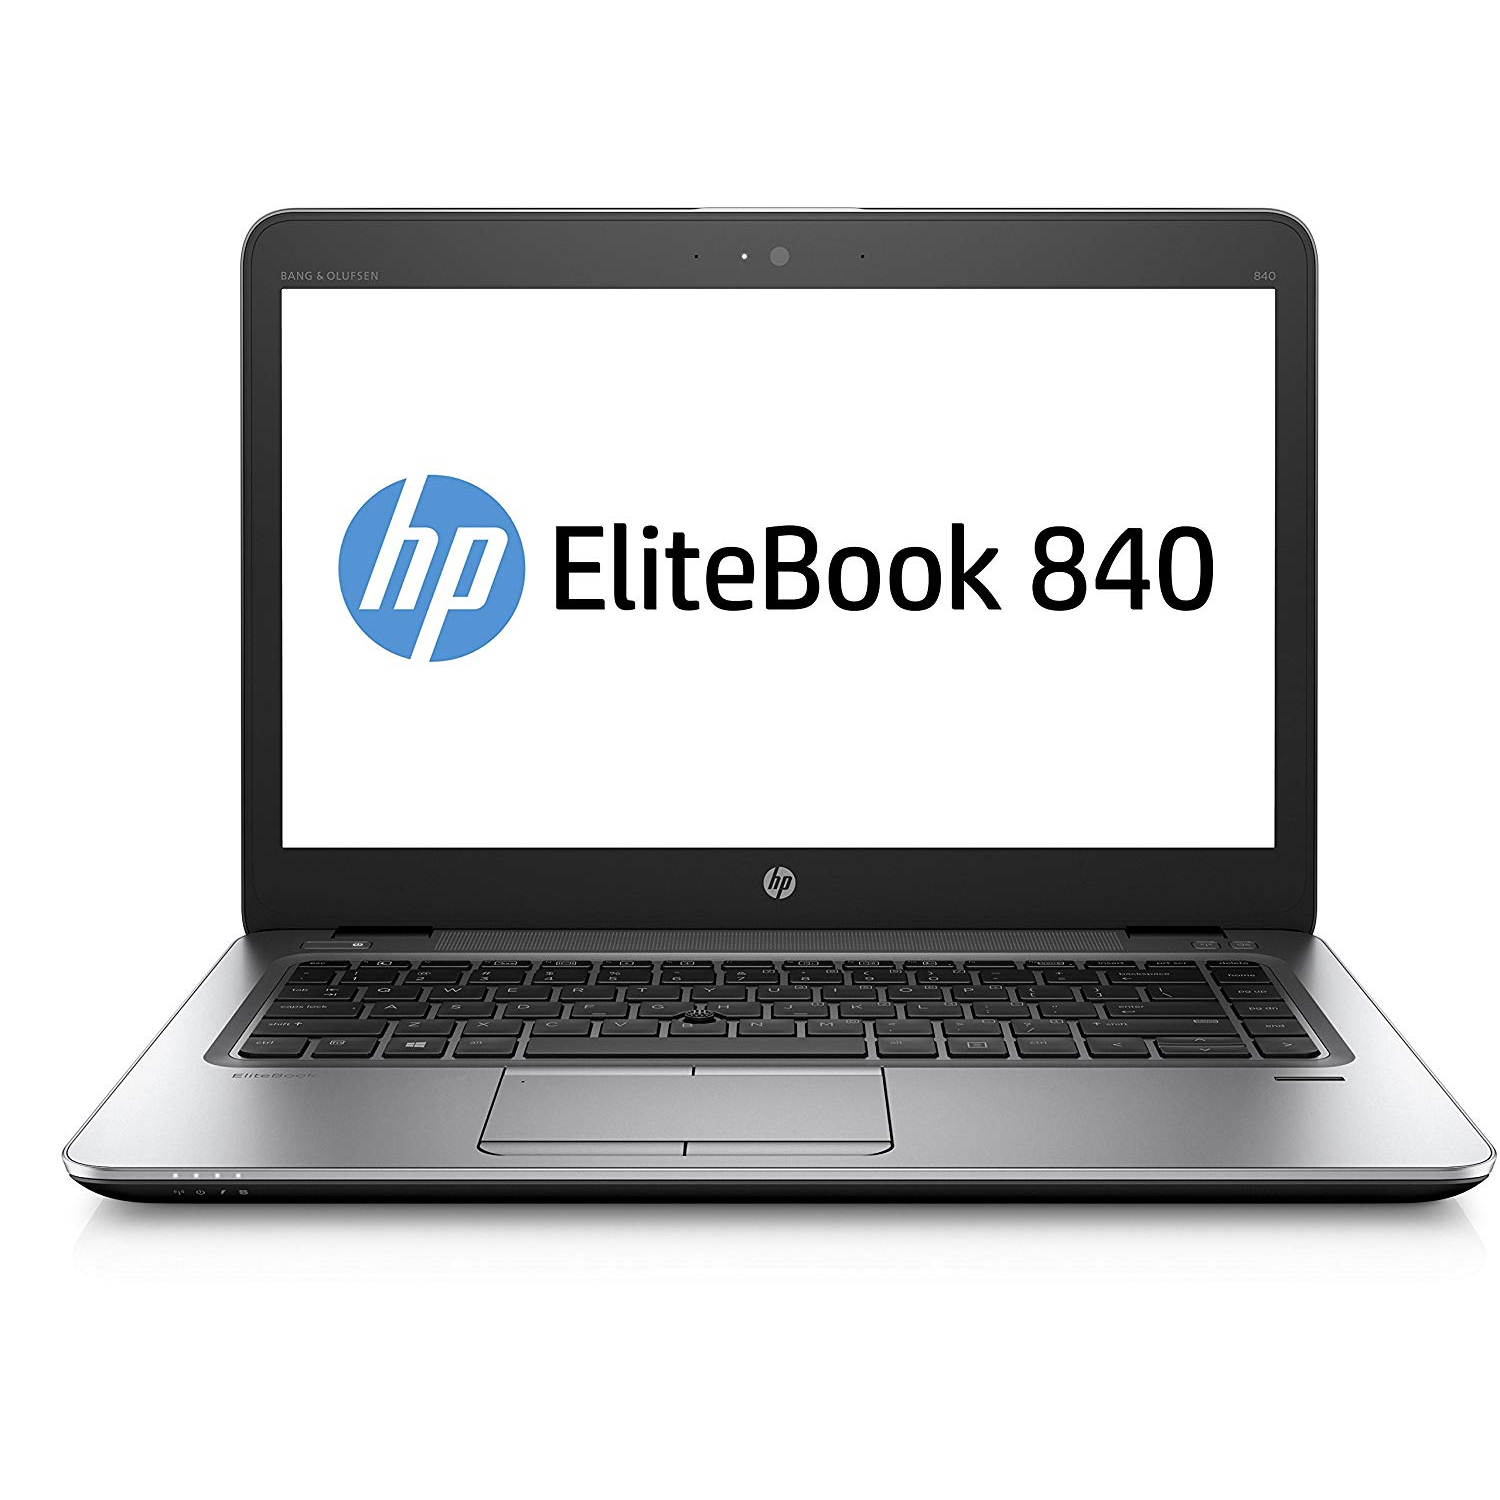 Refurbished (Good) - HP EliteBook 840 G3 i5-6300U, 16GB, 960GB SSD, 14"HD (1366x768), WEBCAM, Intel HD Graphics 520, BT, FPR